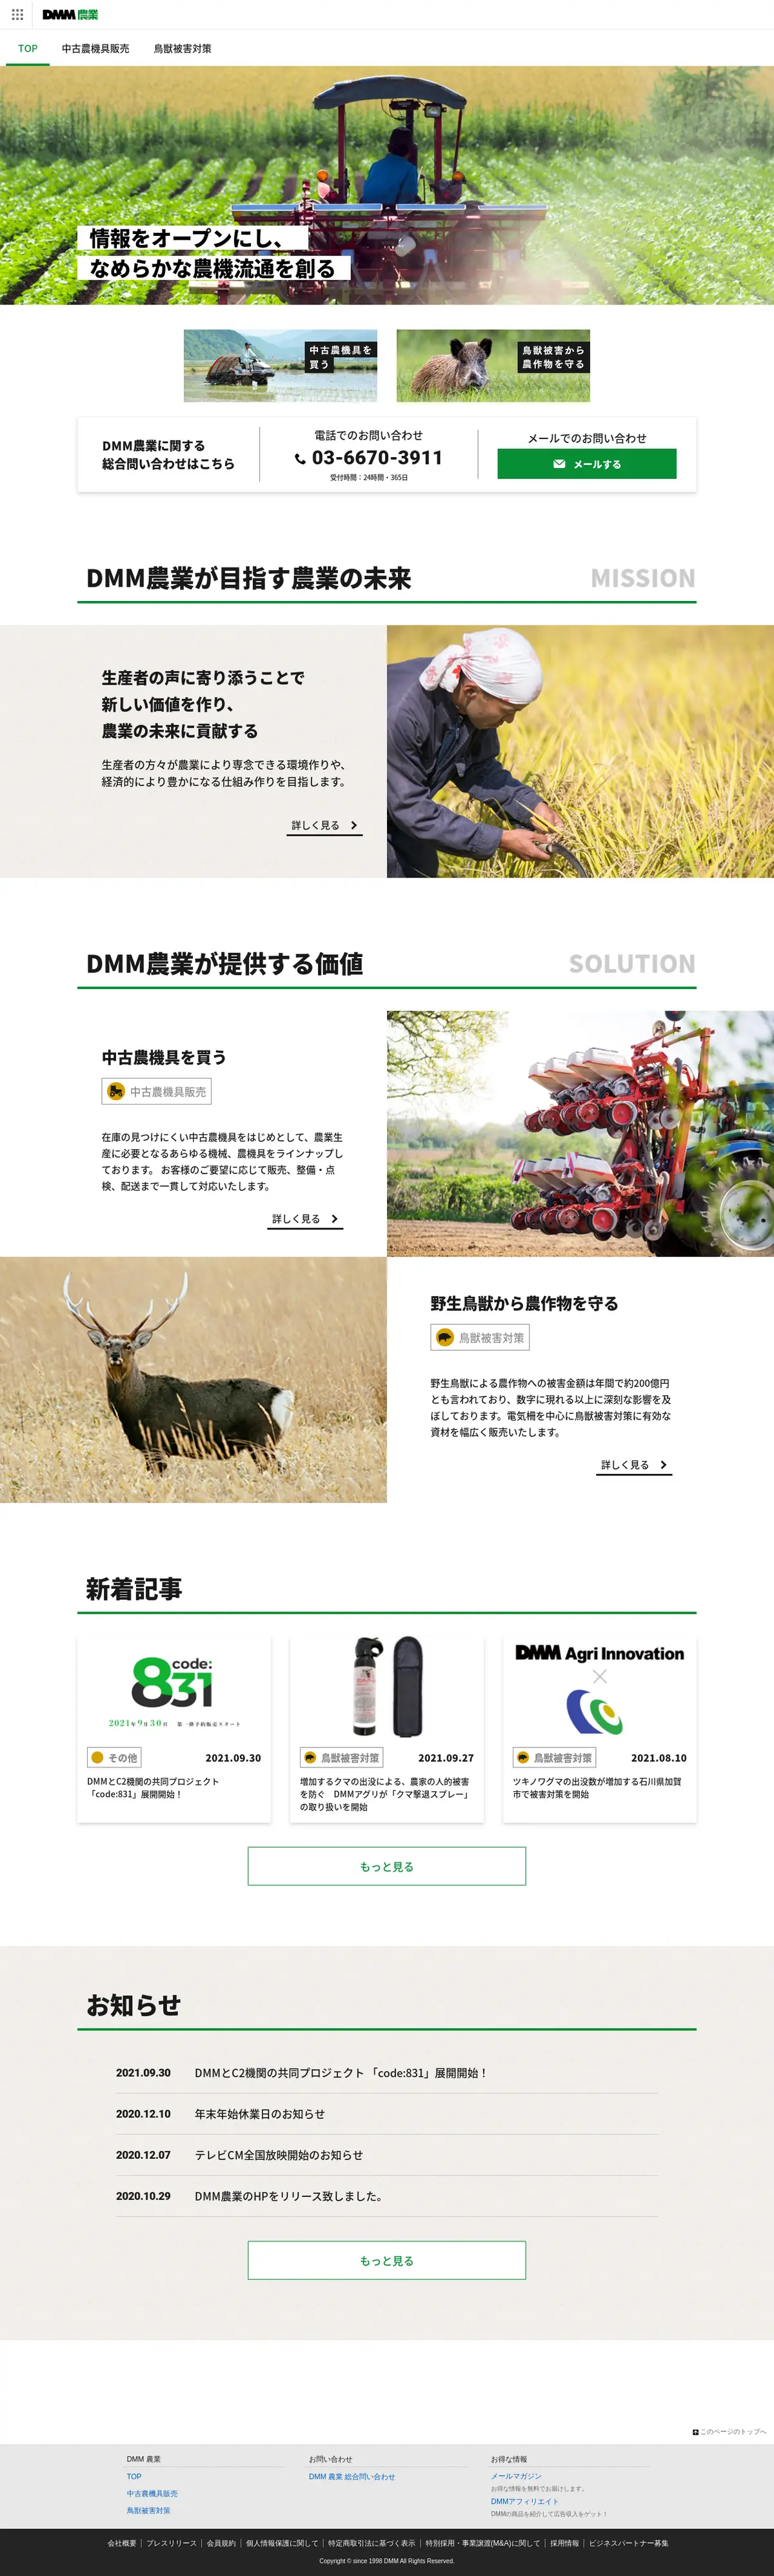 キャプチャ画面 会社名:DMM.com Groupプロジェクト名:DMM 農業 画面名:全国トップ デバイス名:PCカテゴリ:農林水産タグ:PC,全国トップ